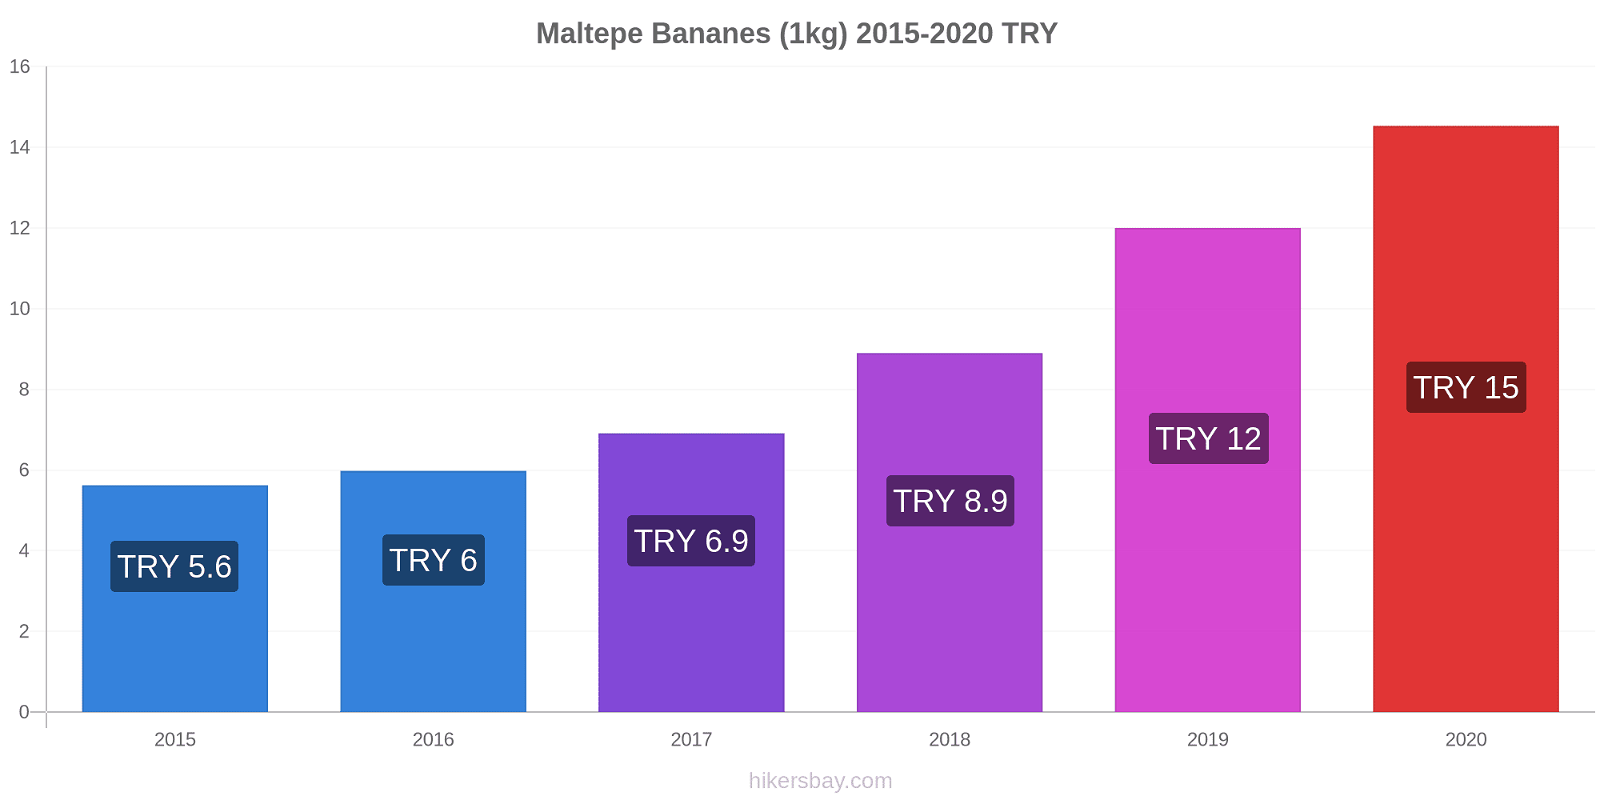 Maltepe changements de prix Bananes (1kg) hikersbay.com